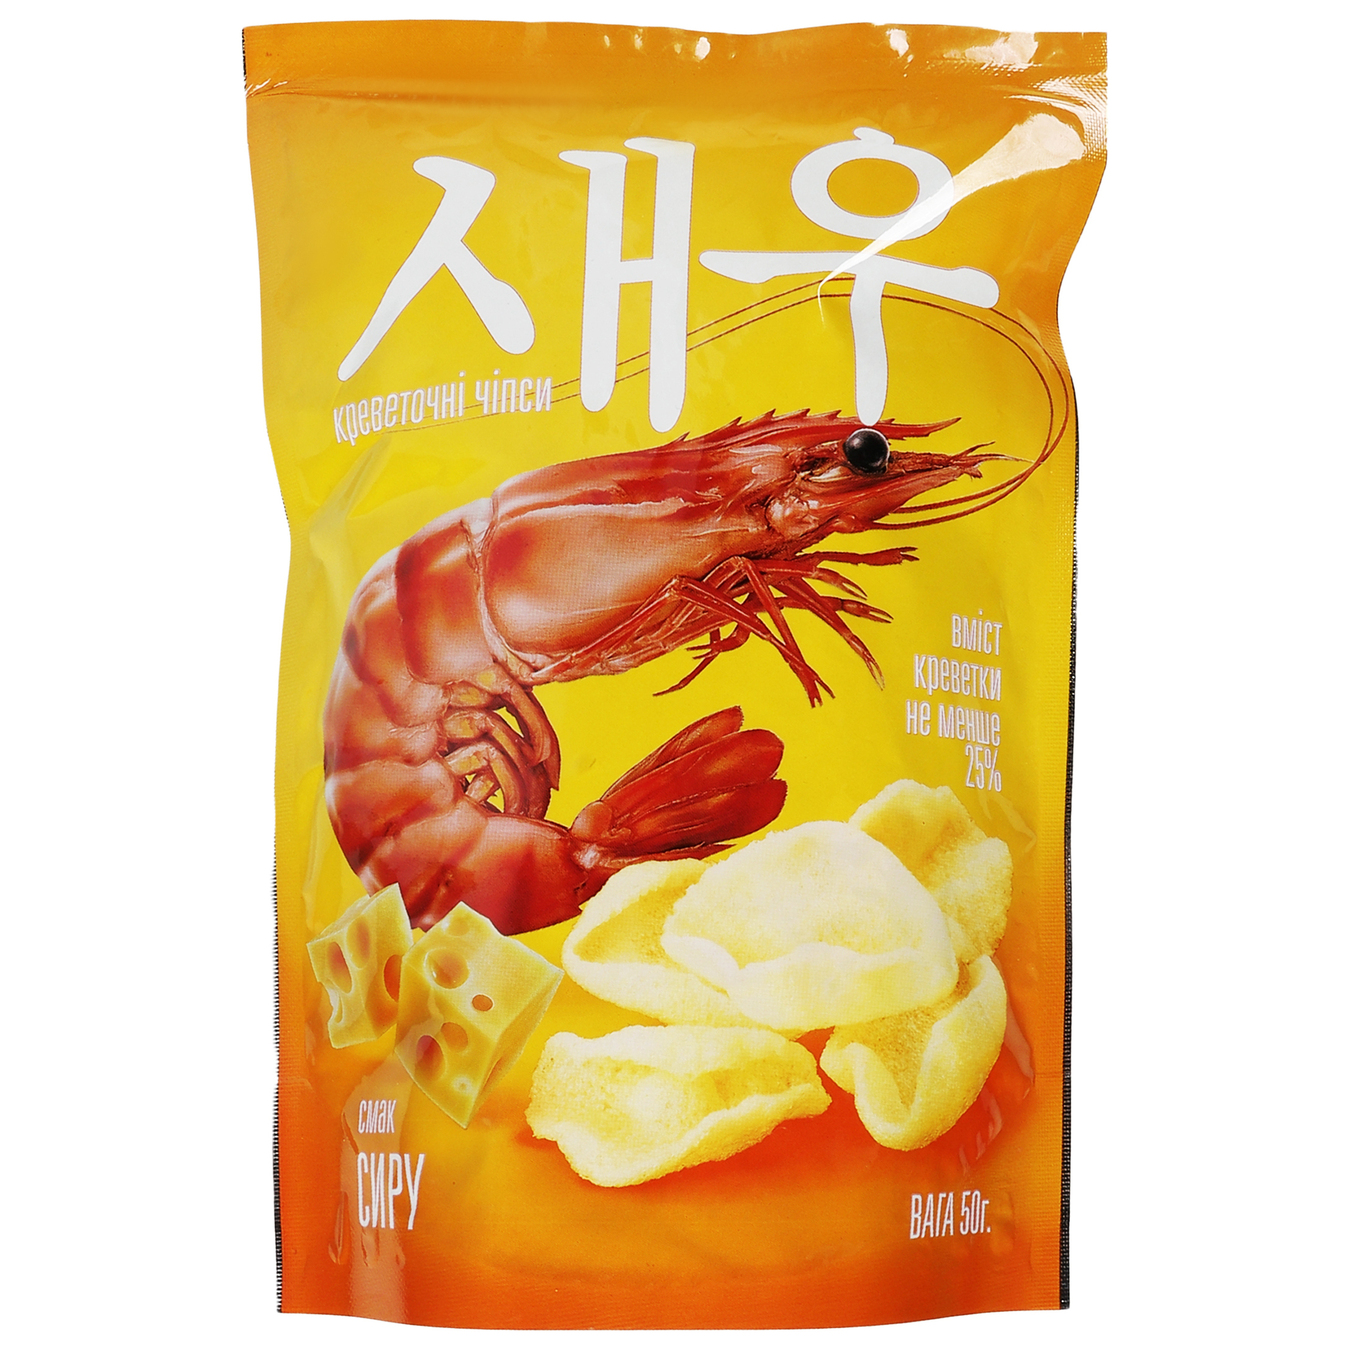 Shrimp chips Shrips taste of cheese 50g